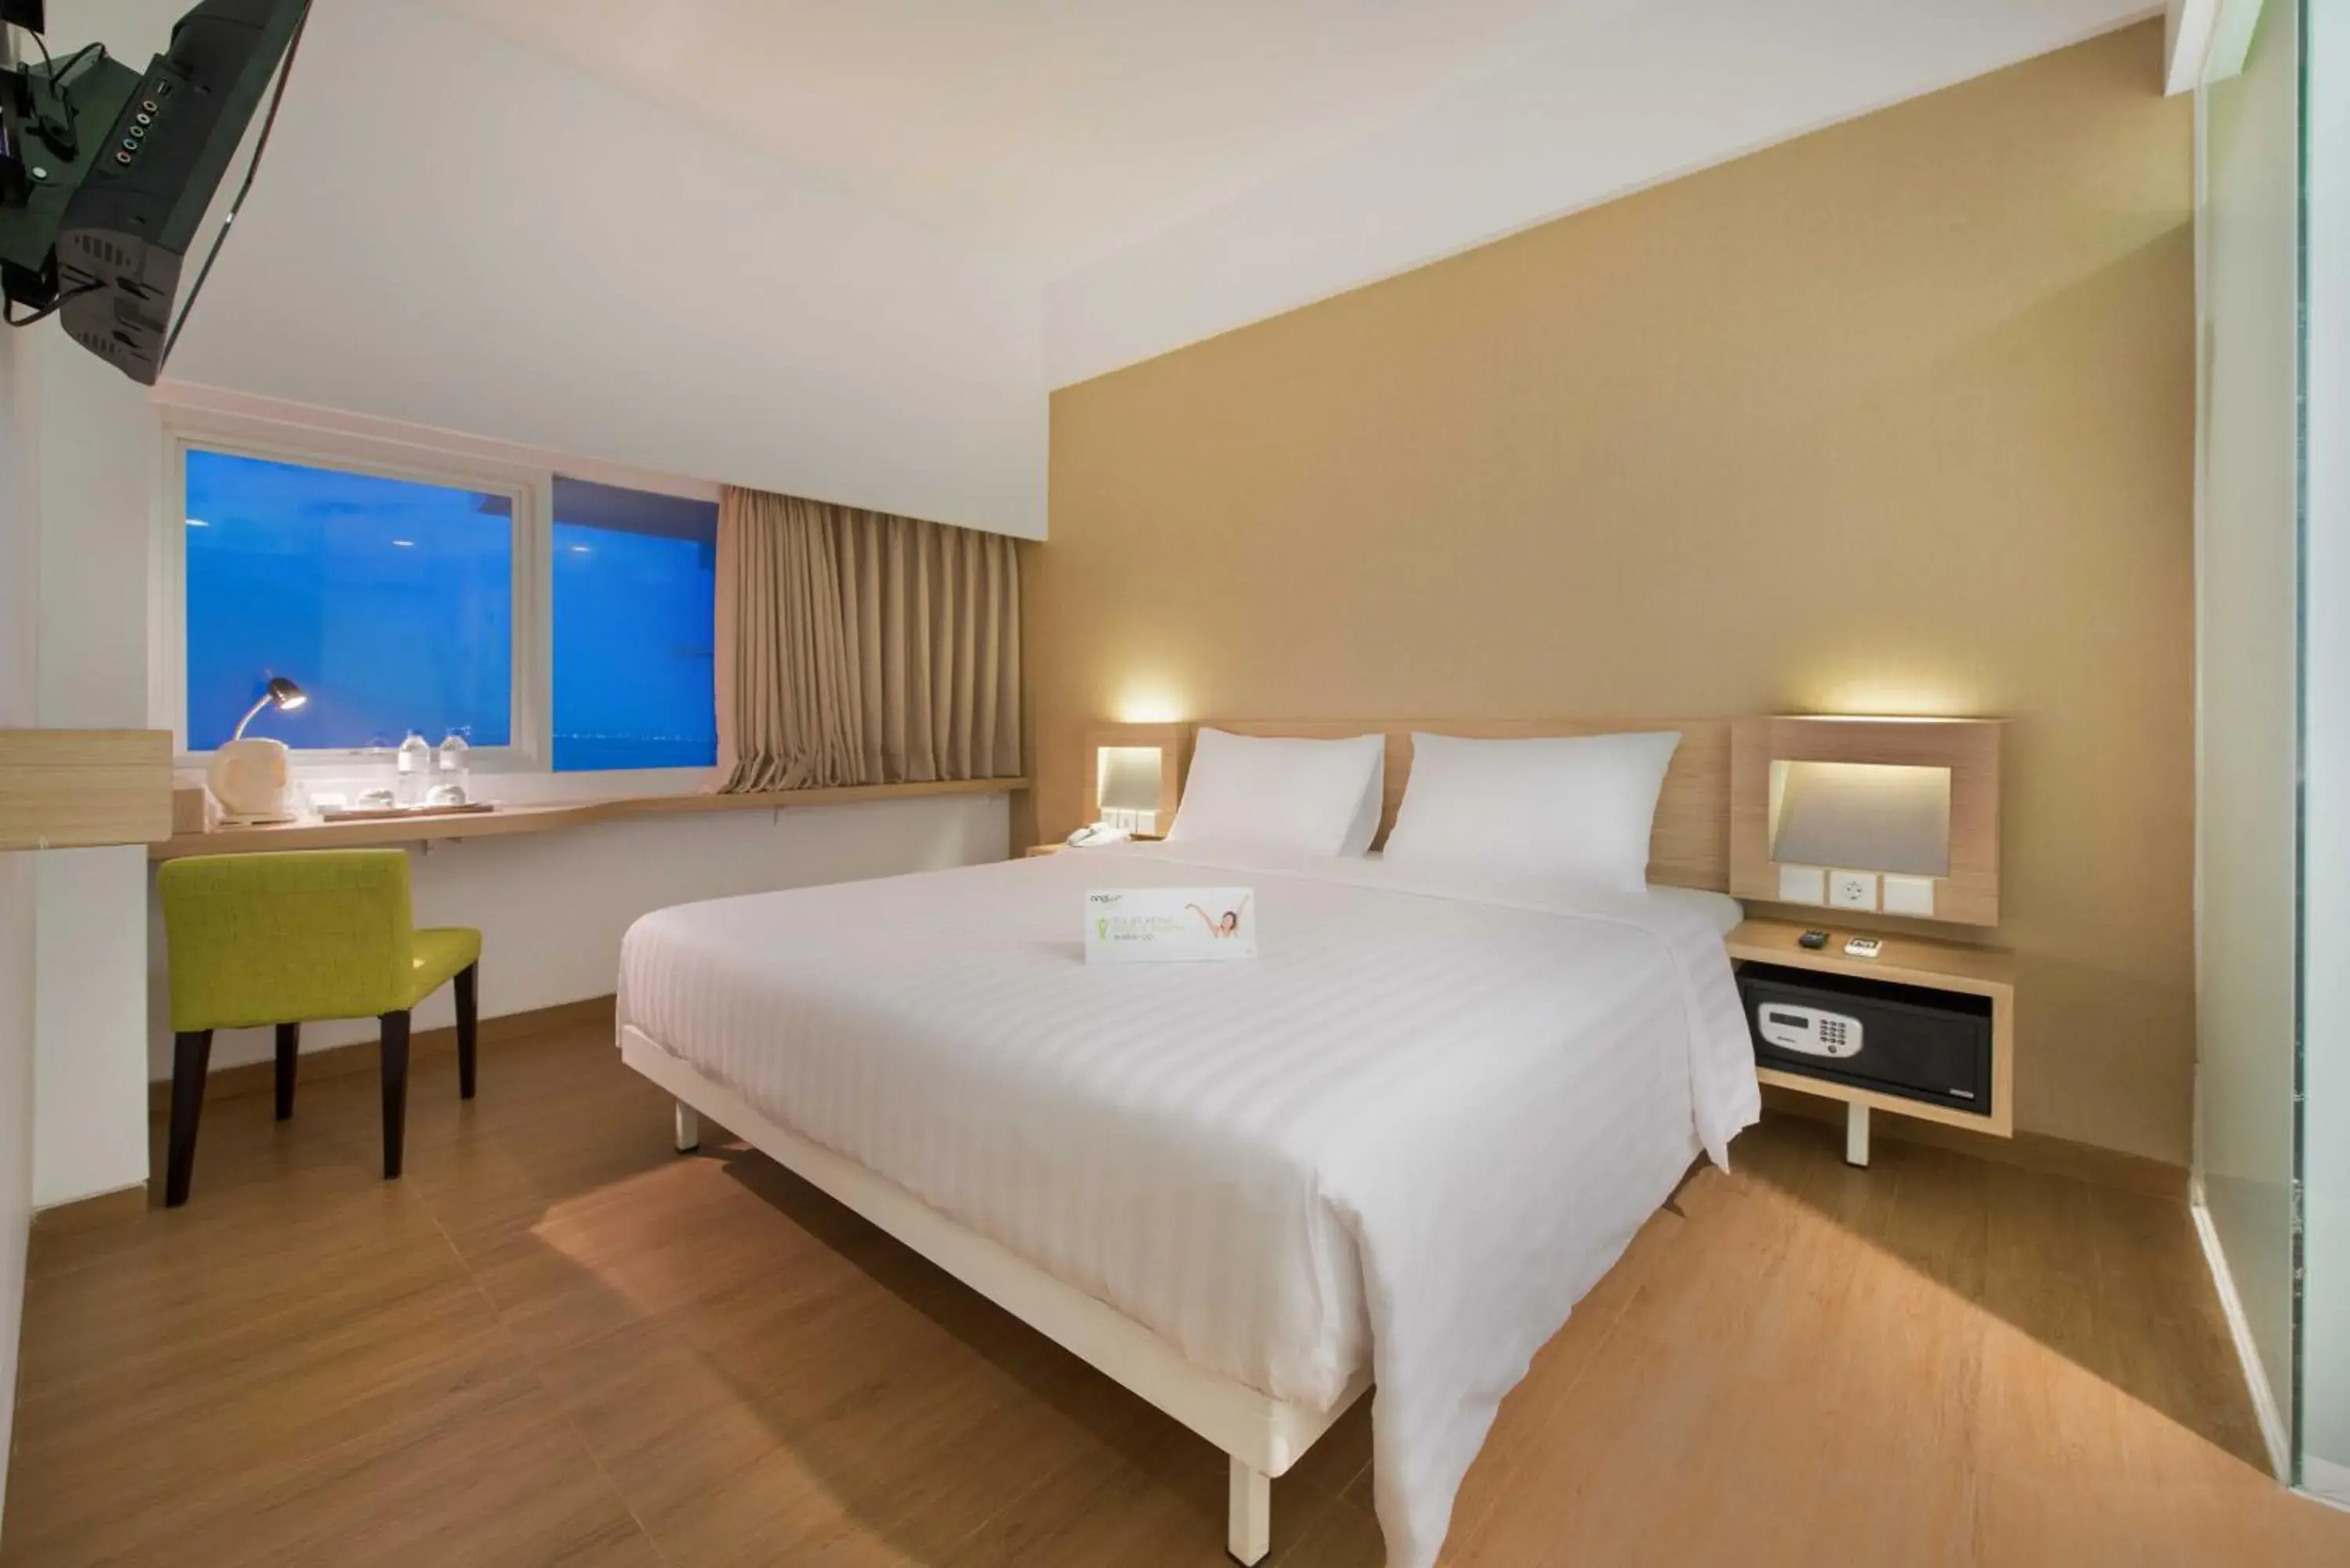 Bed in Whiz Prime Hotel Megamas Manado